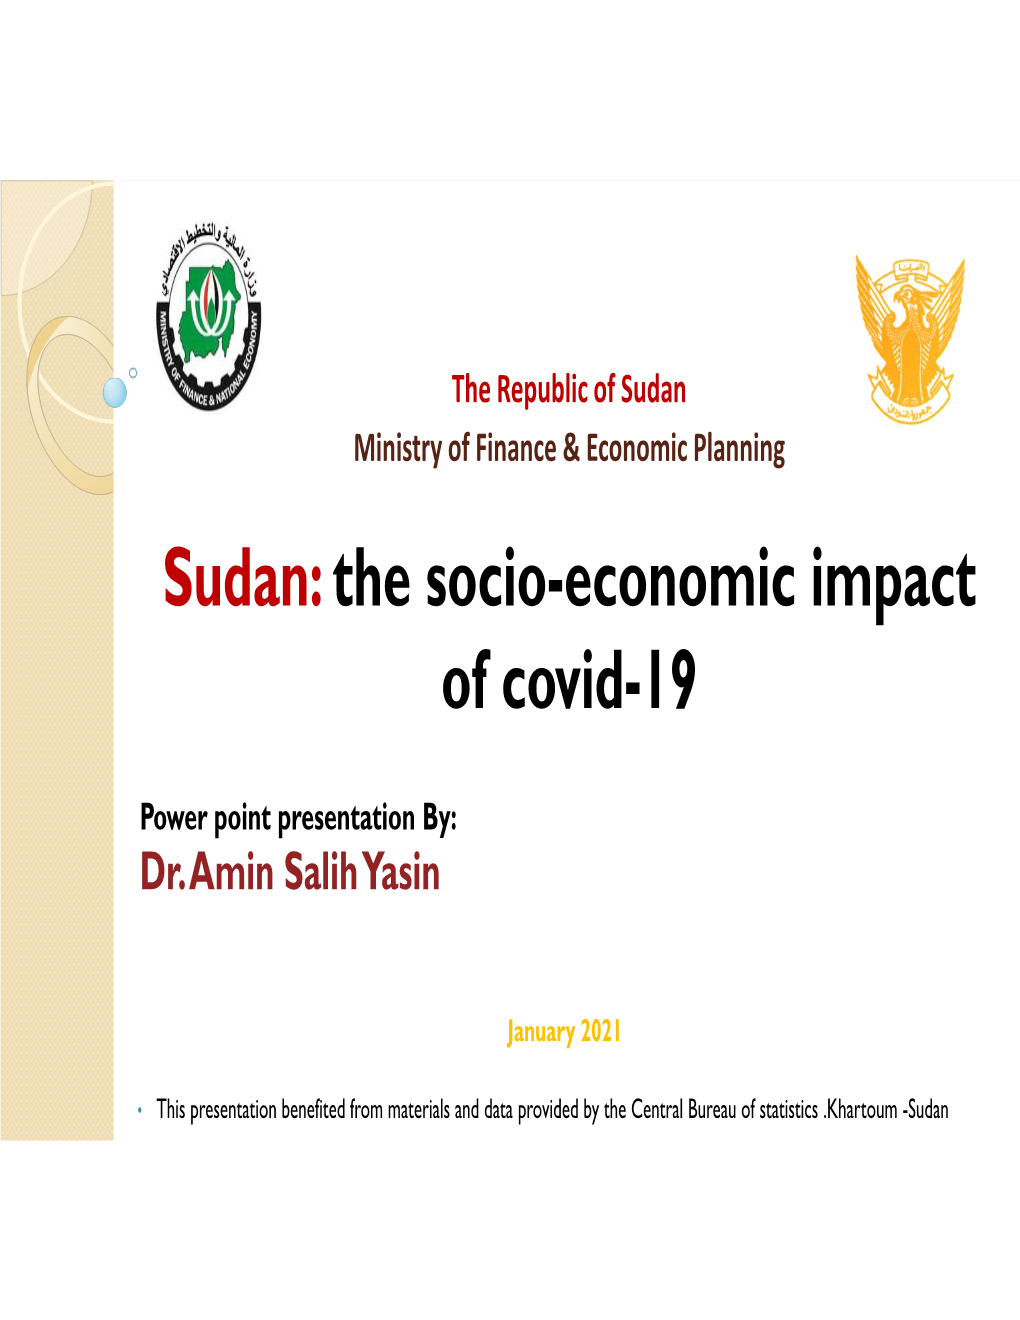 Sudan: the Socio-Economic Impact of Covid-19